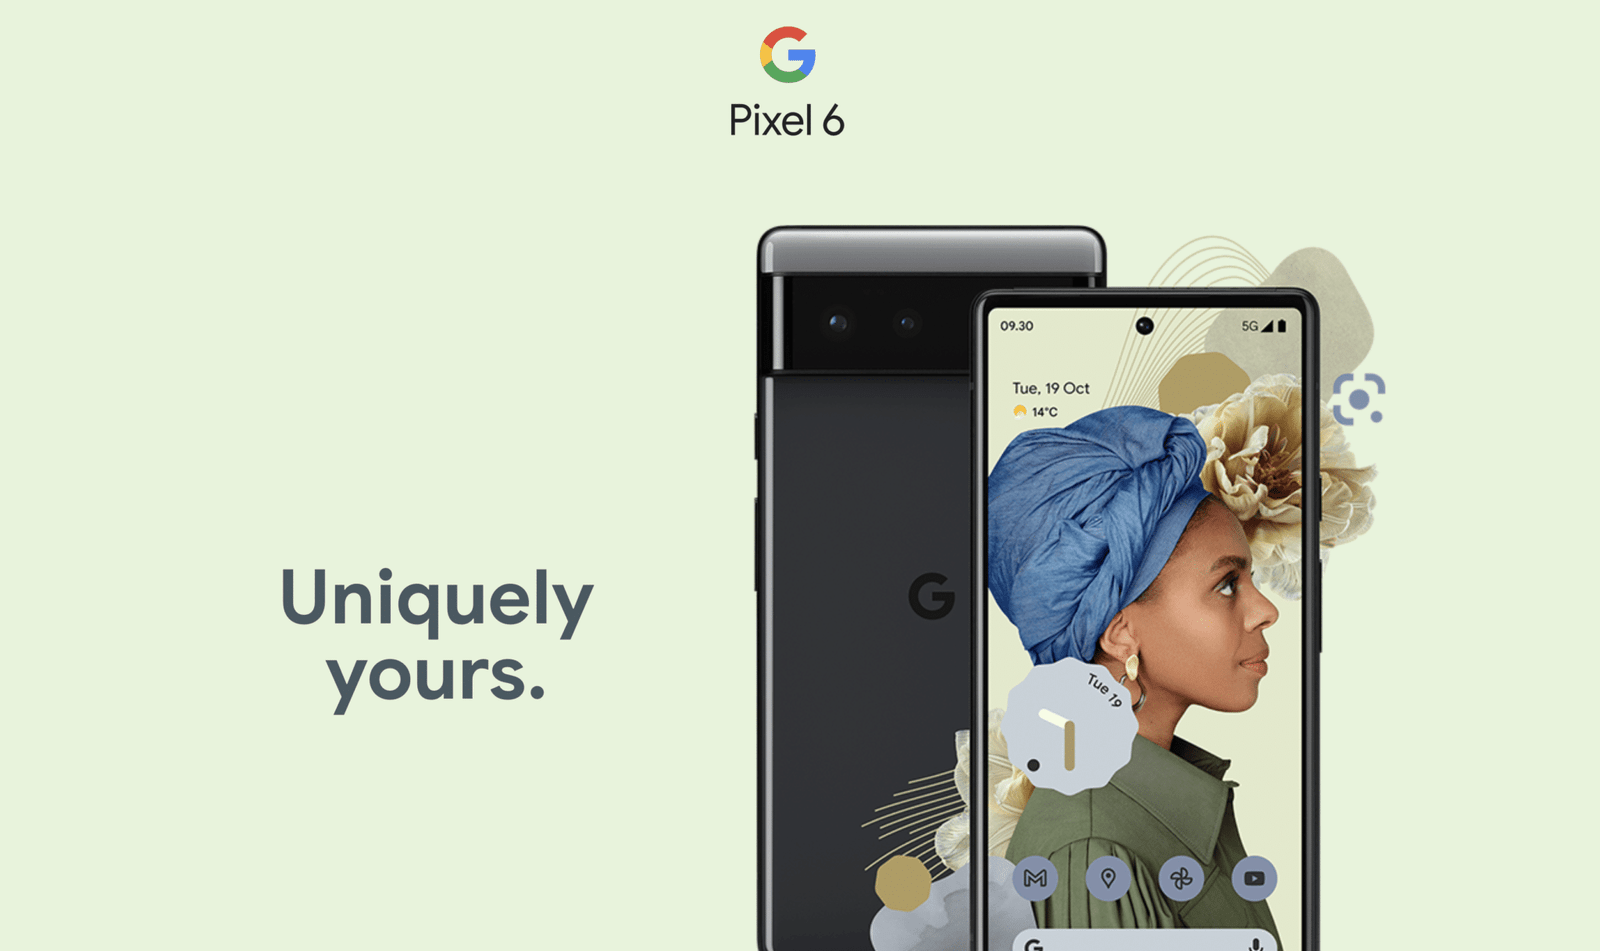 Google Pixel 6 contará con una cámara principal de 50MP, Magic Eraser, Face Deblur y más